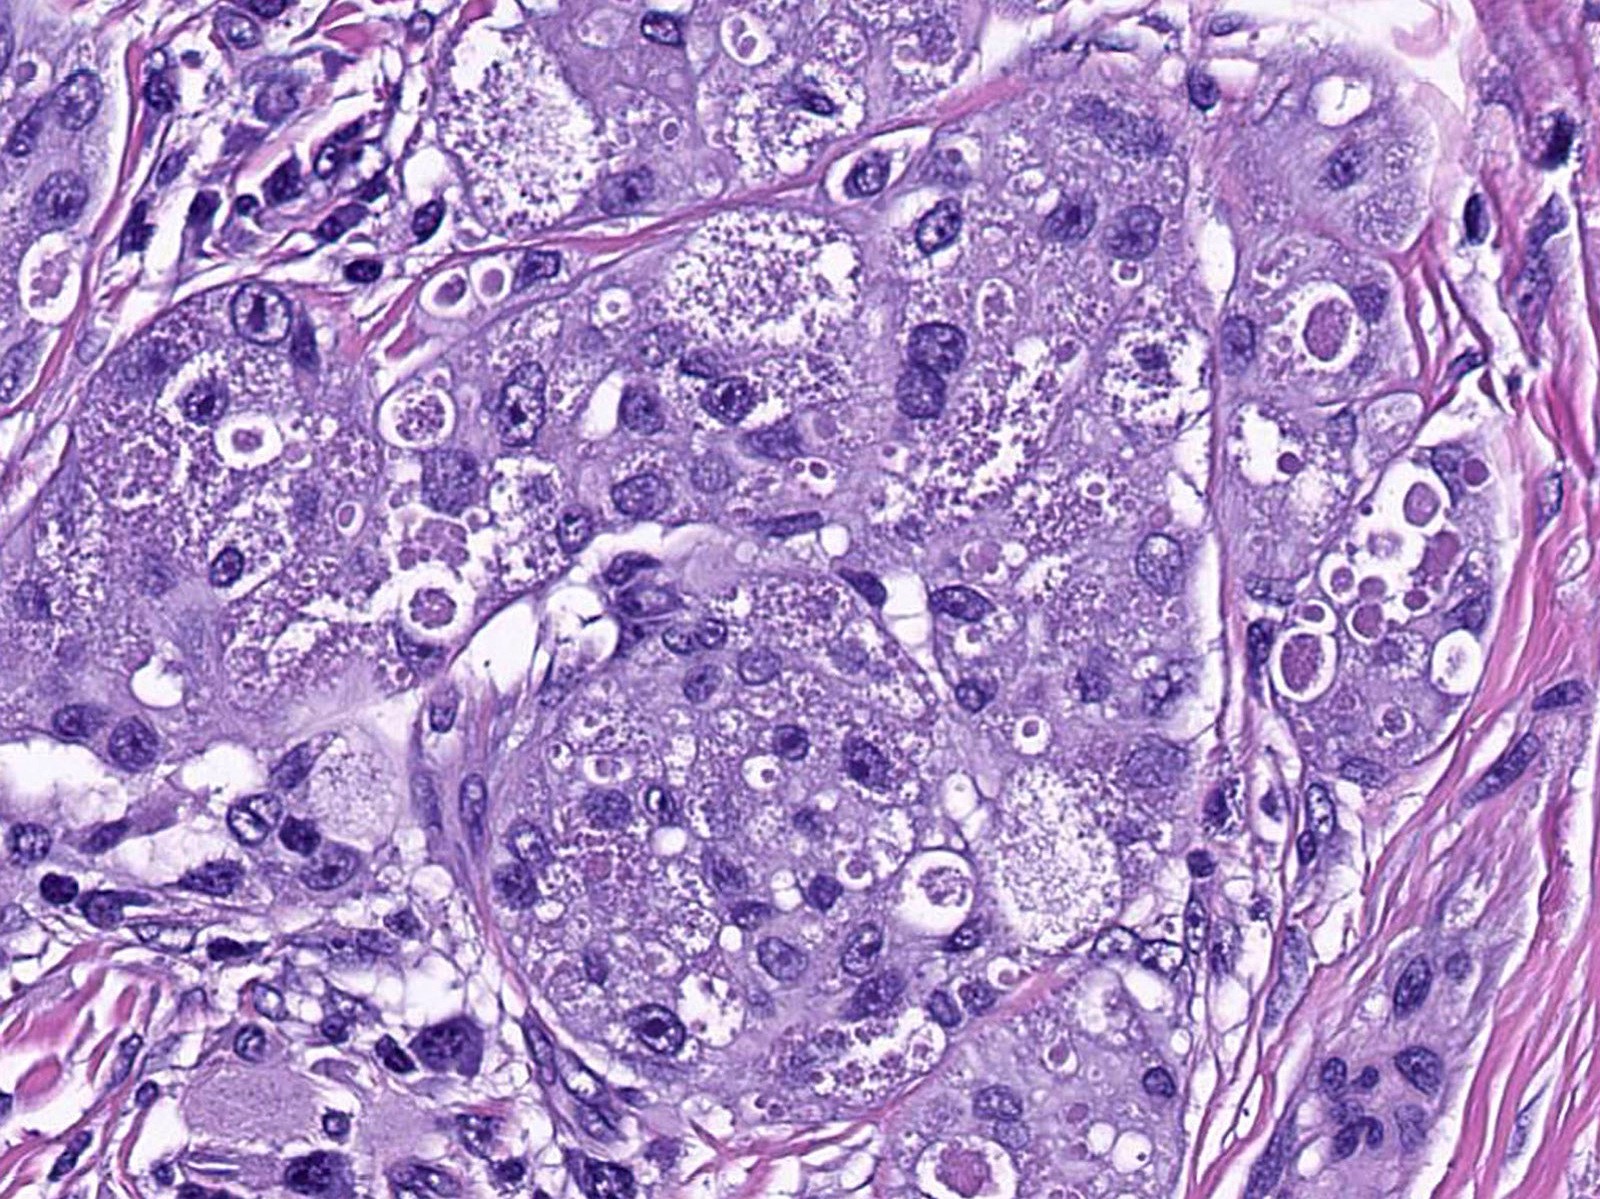 Pathology Outlines - Granular cell tumor